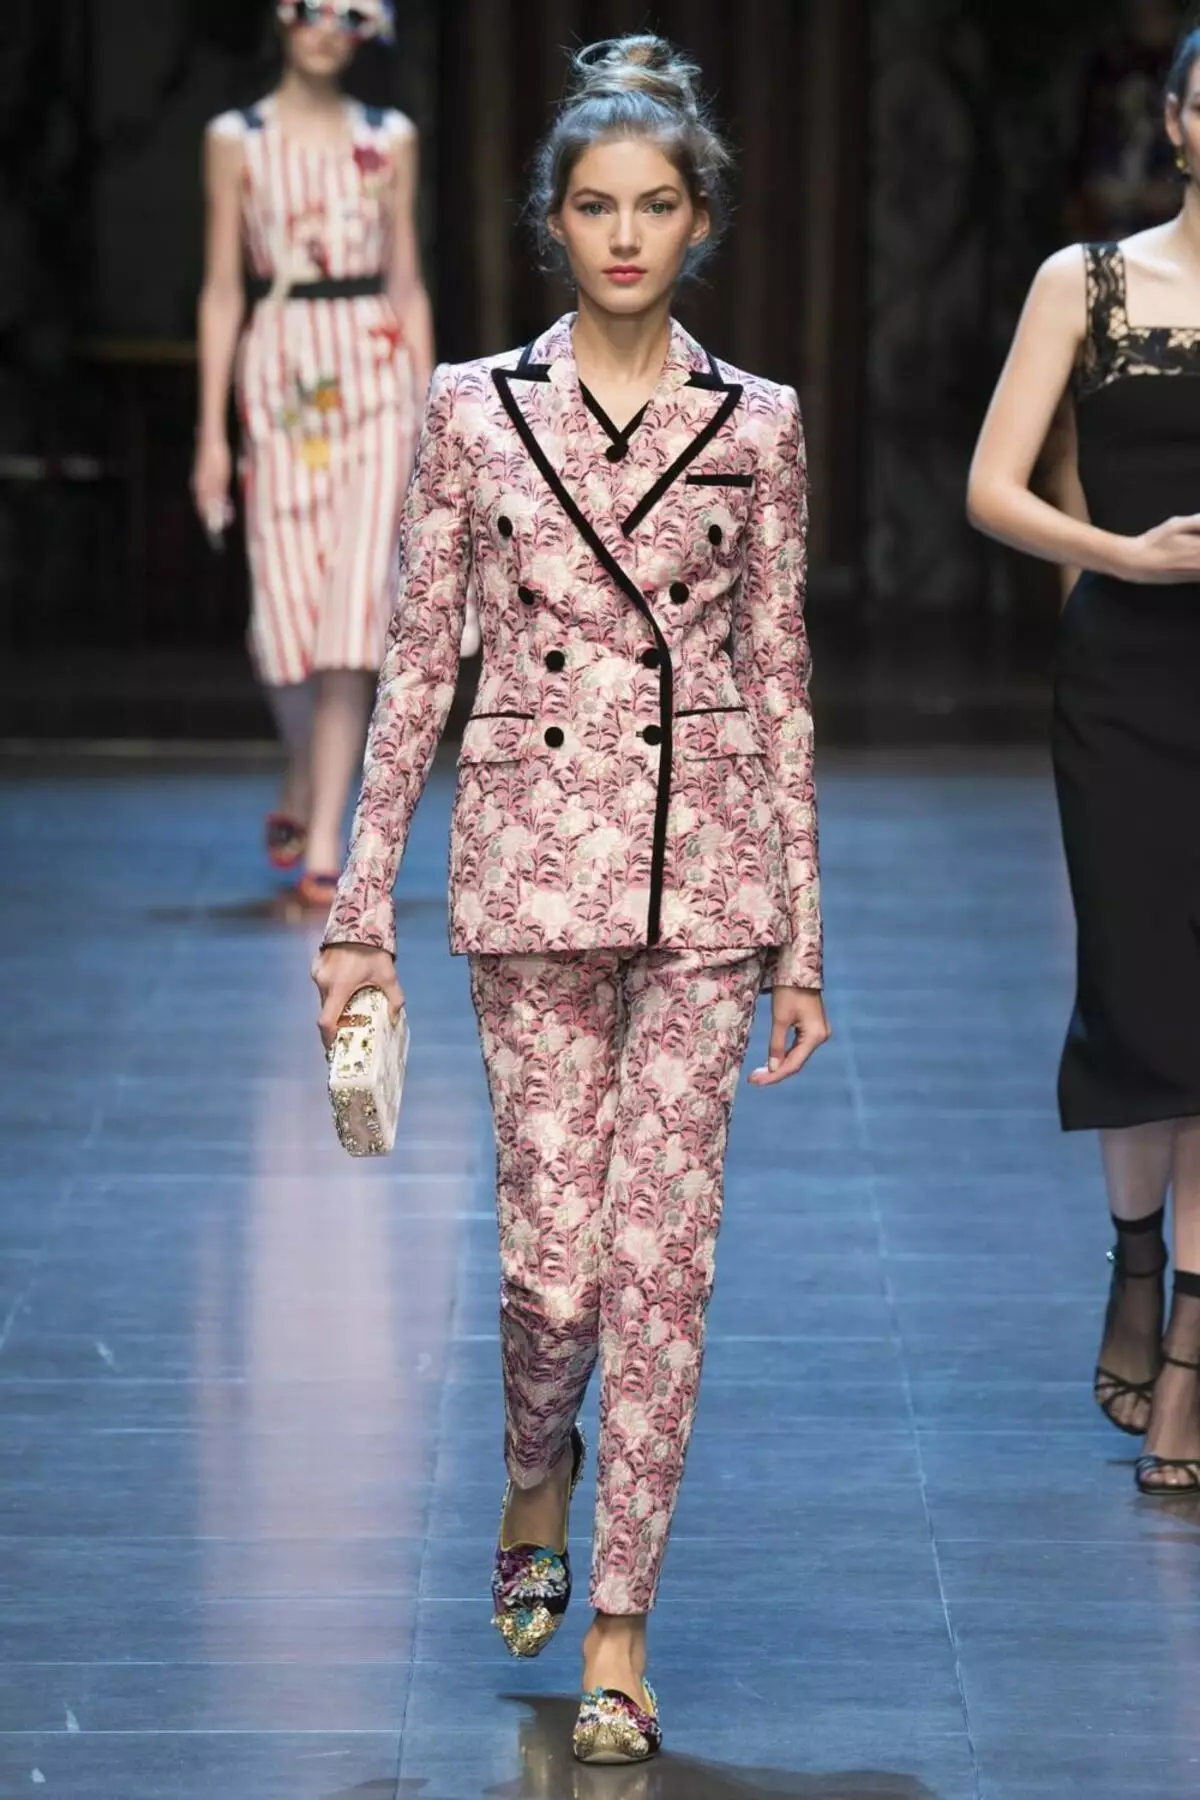 Housujen Naisten puvut 2021 (242 valokuvaa): Uudet ja muotivirtaukset Chanel Style 14844_170